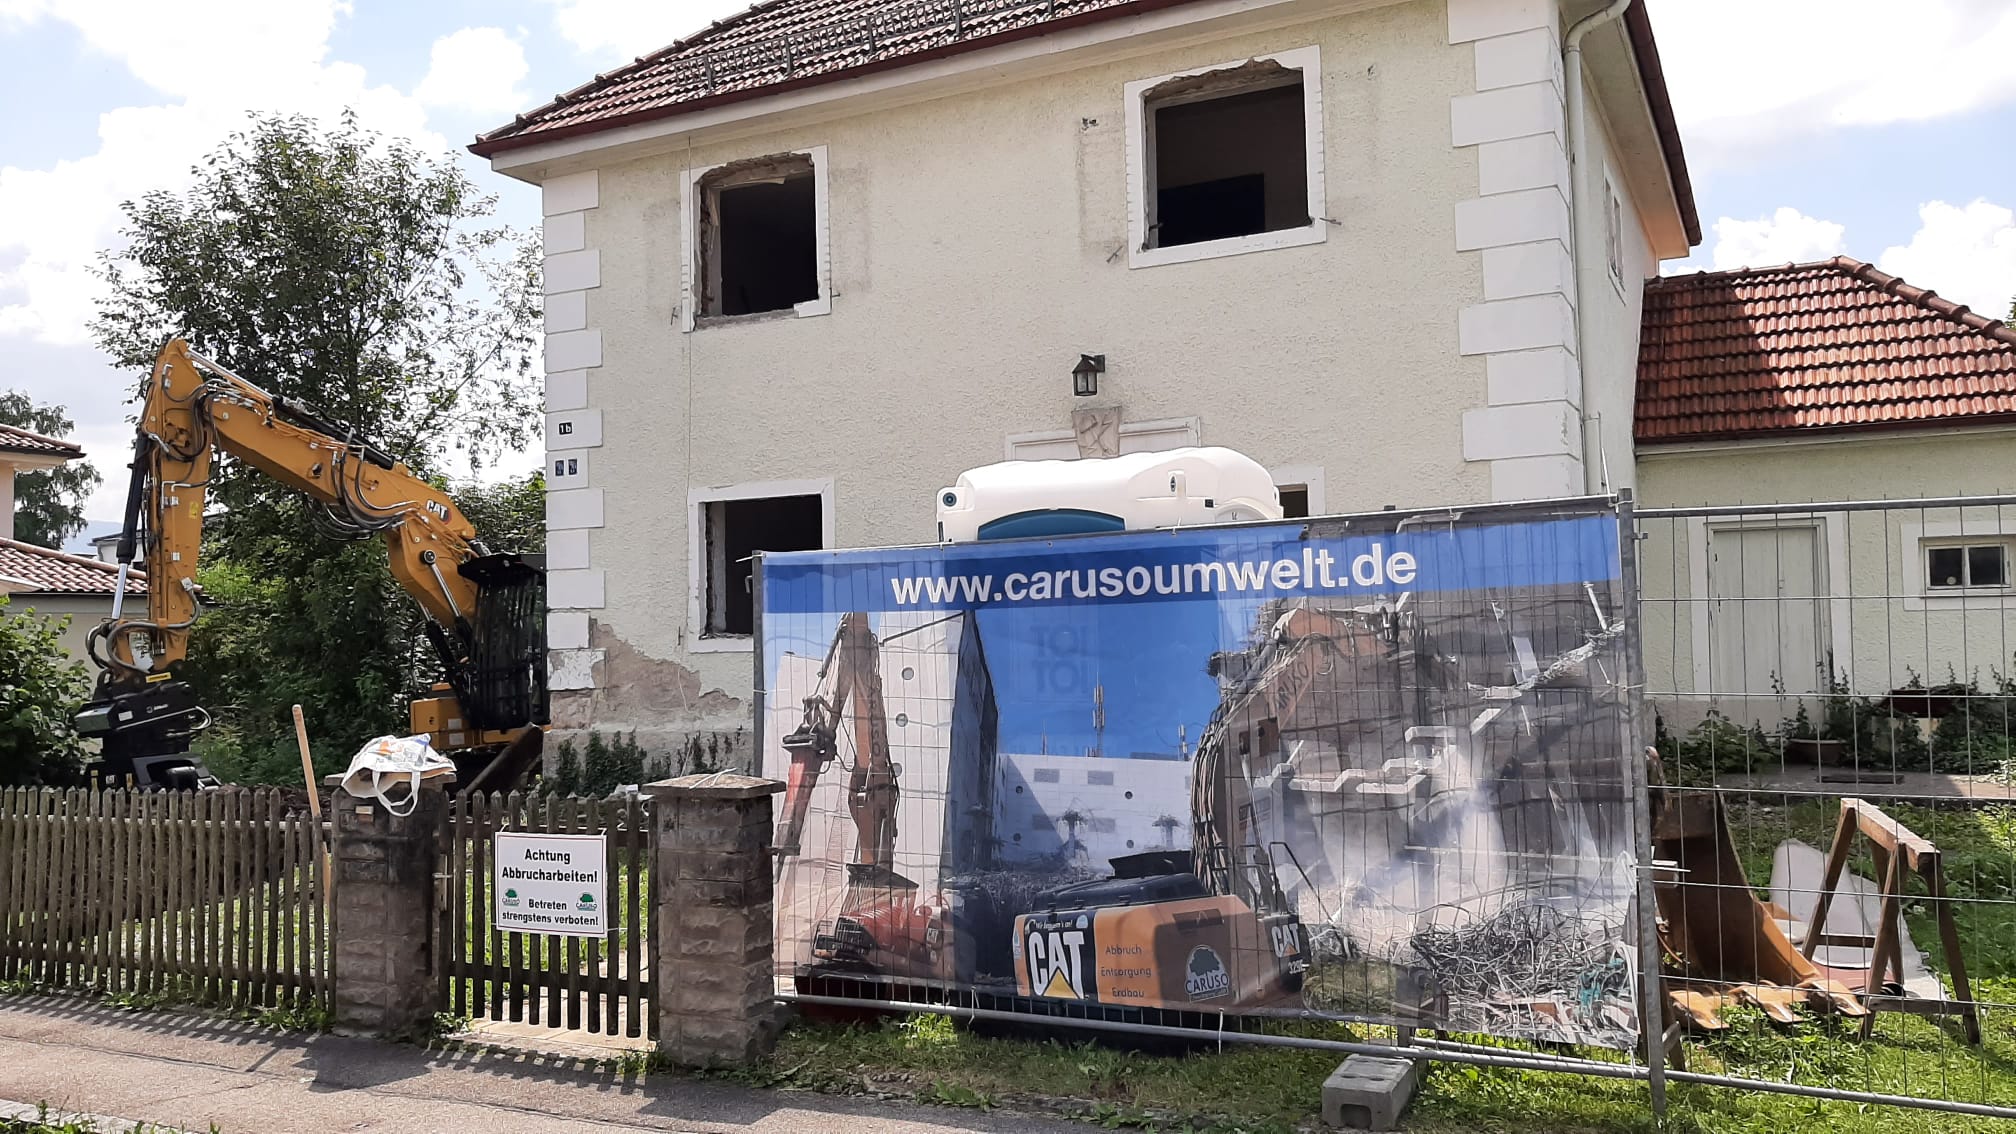 Abbruch eines Wohngebäudes in Penzberg